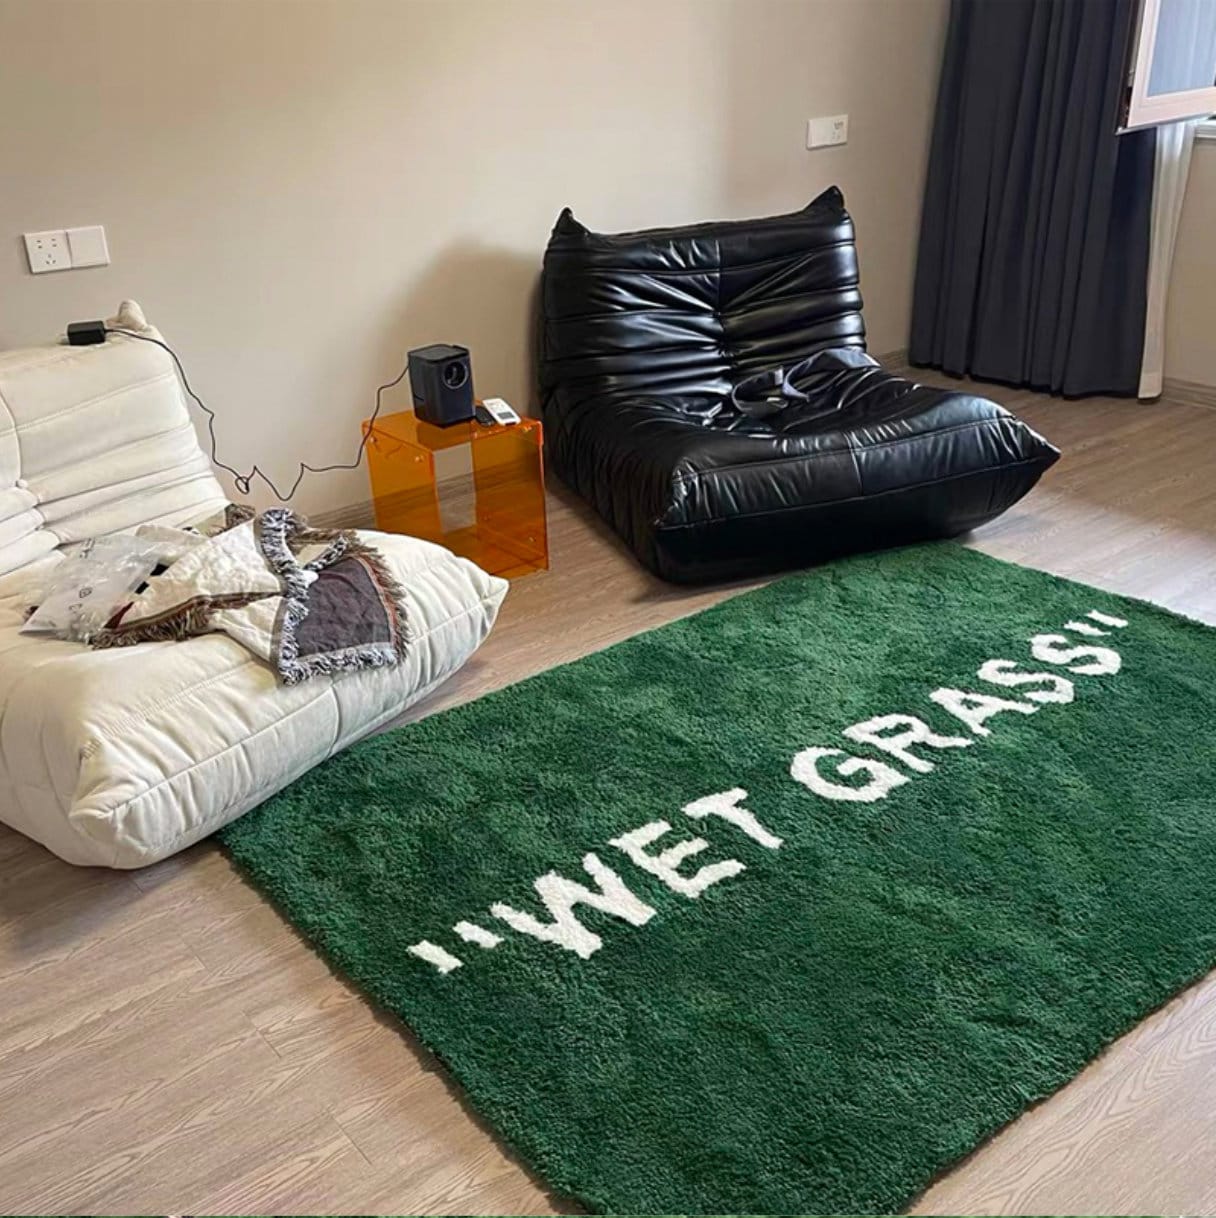 Buy WET GRASS Rug – TheHausHaus